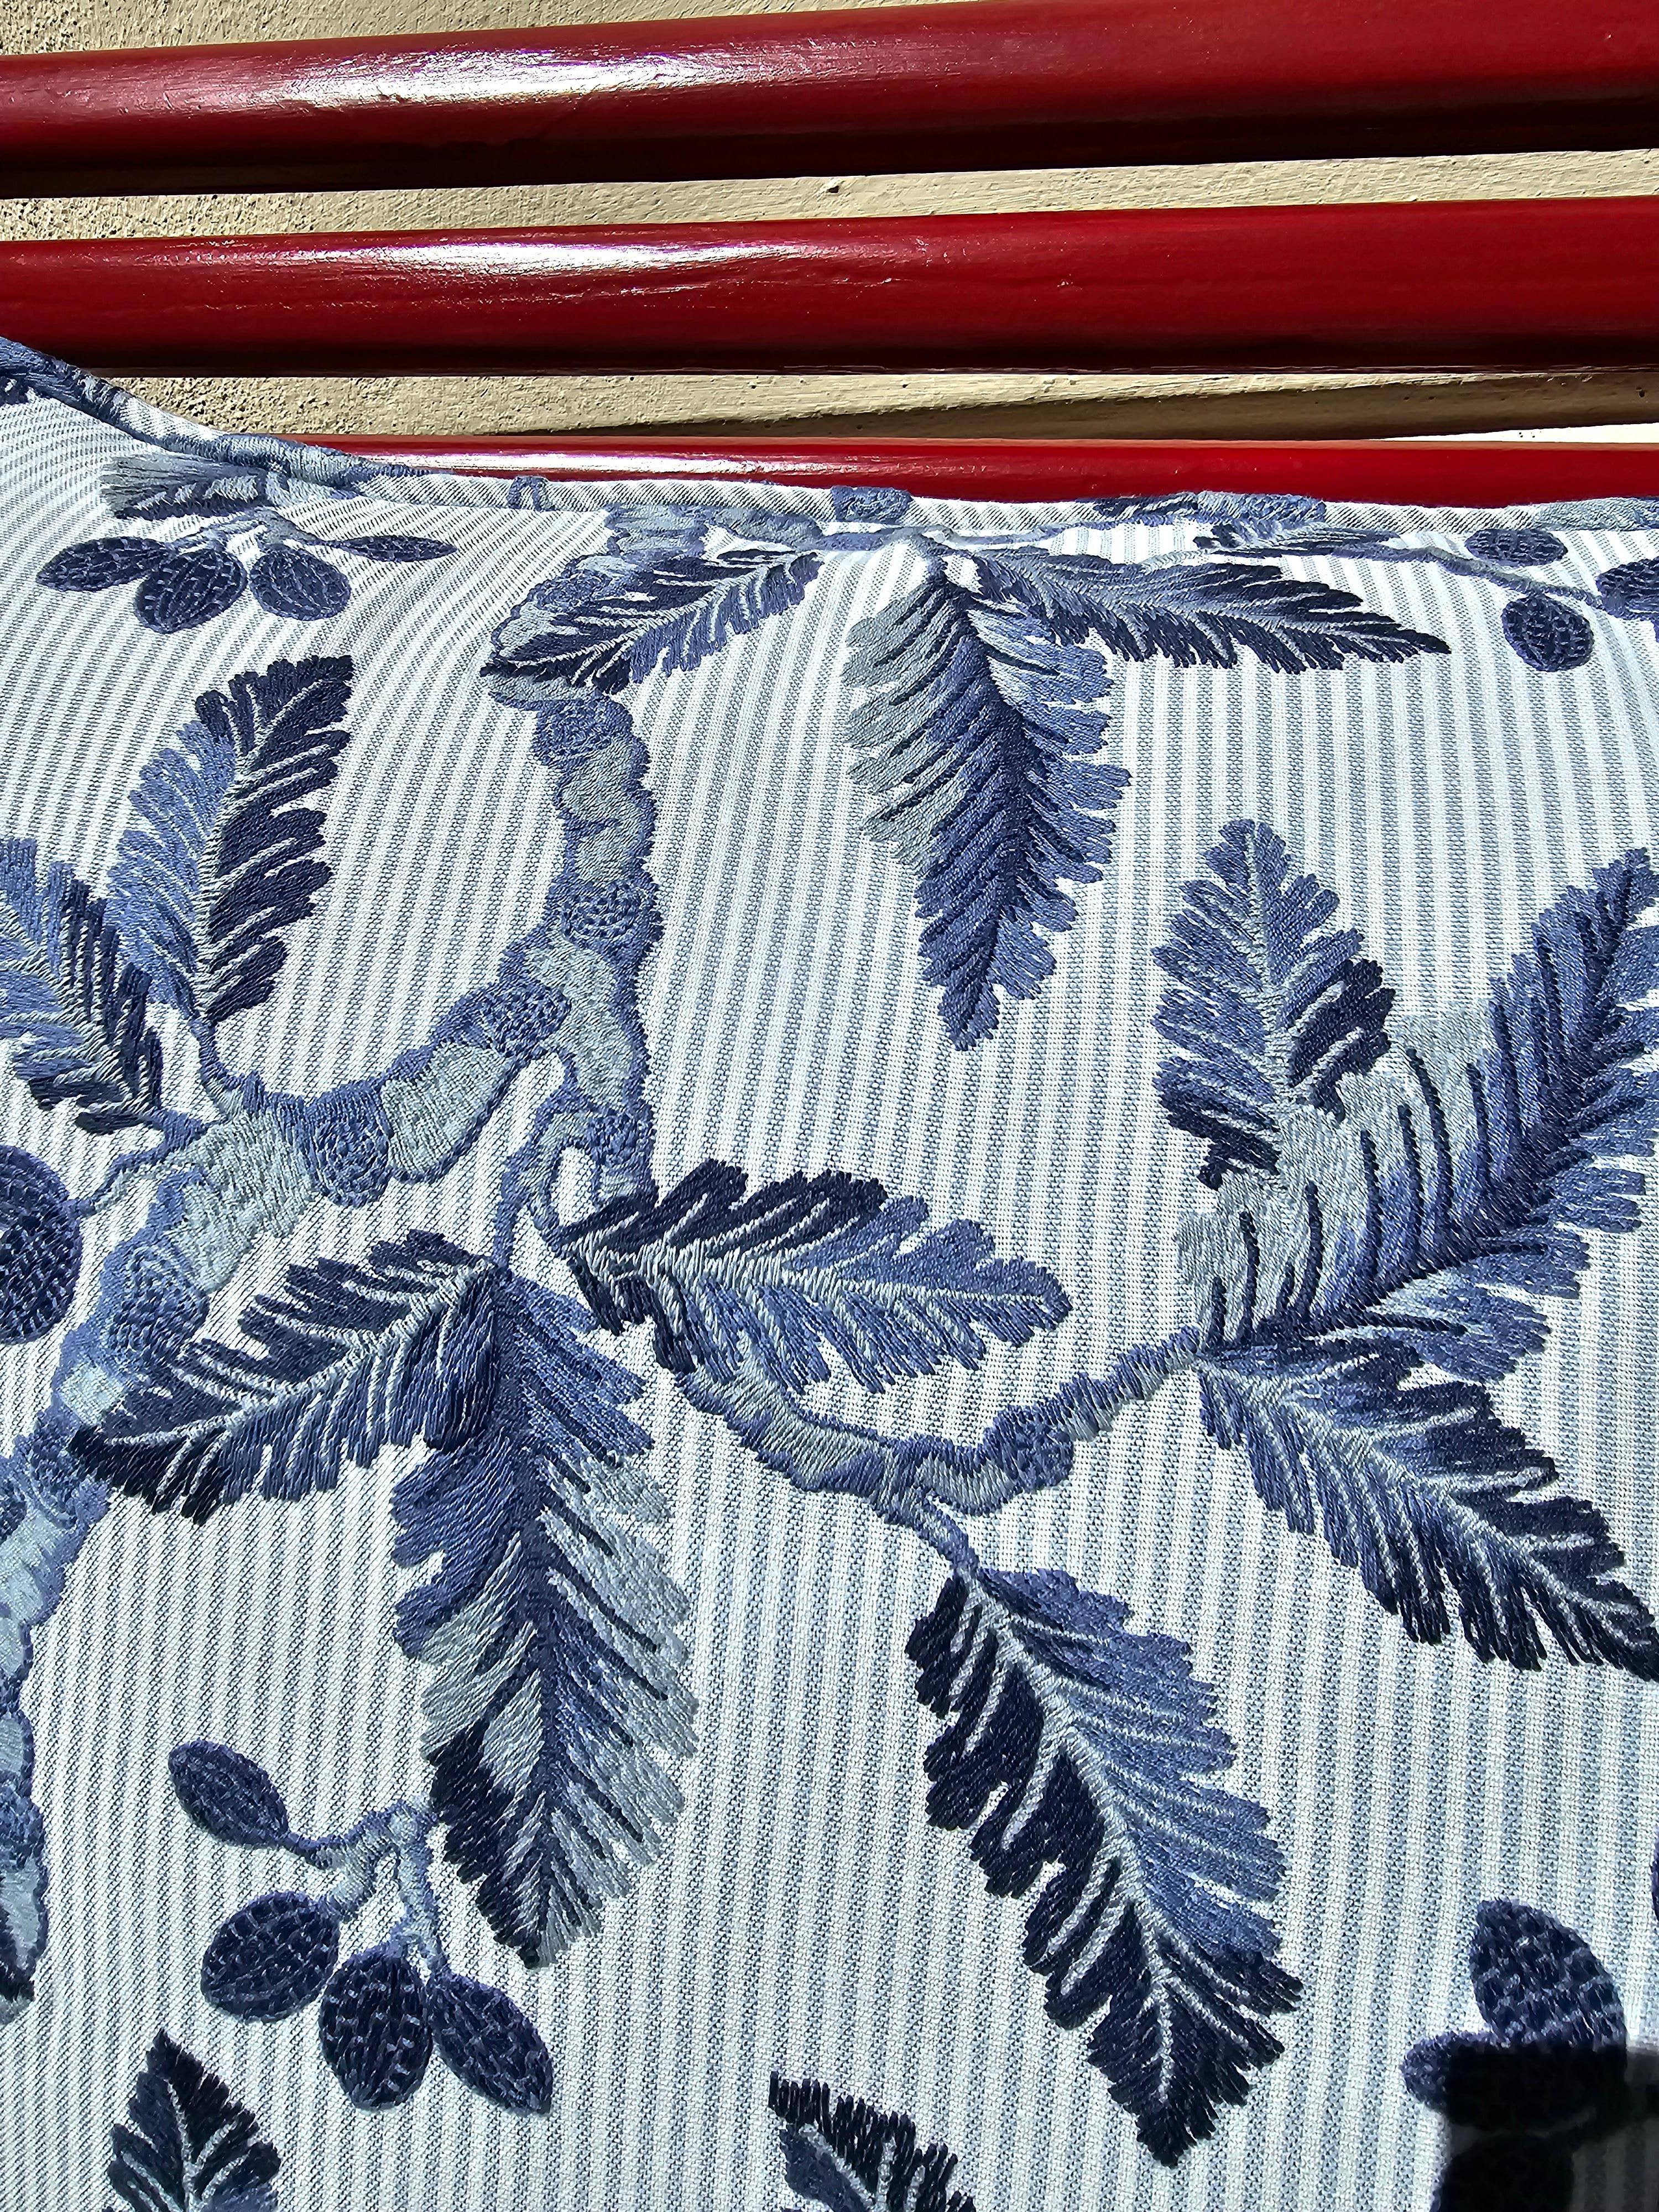 Coussin artisanal en tissu de coton de style champêtre avec un décor de fleurs cousues en bleu et blanc sur un fond rayé bleu et blanc. Fabriqué en Autriche. Rempli de plumes. Parfait pour combiner avec d'autres coussins comme des quckers ou des